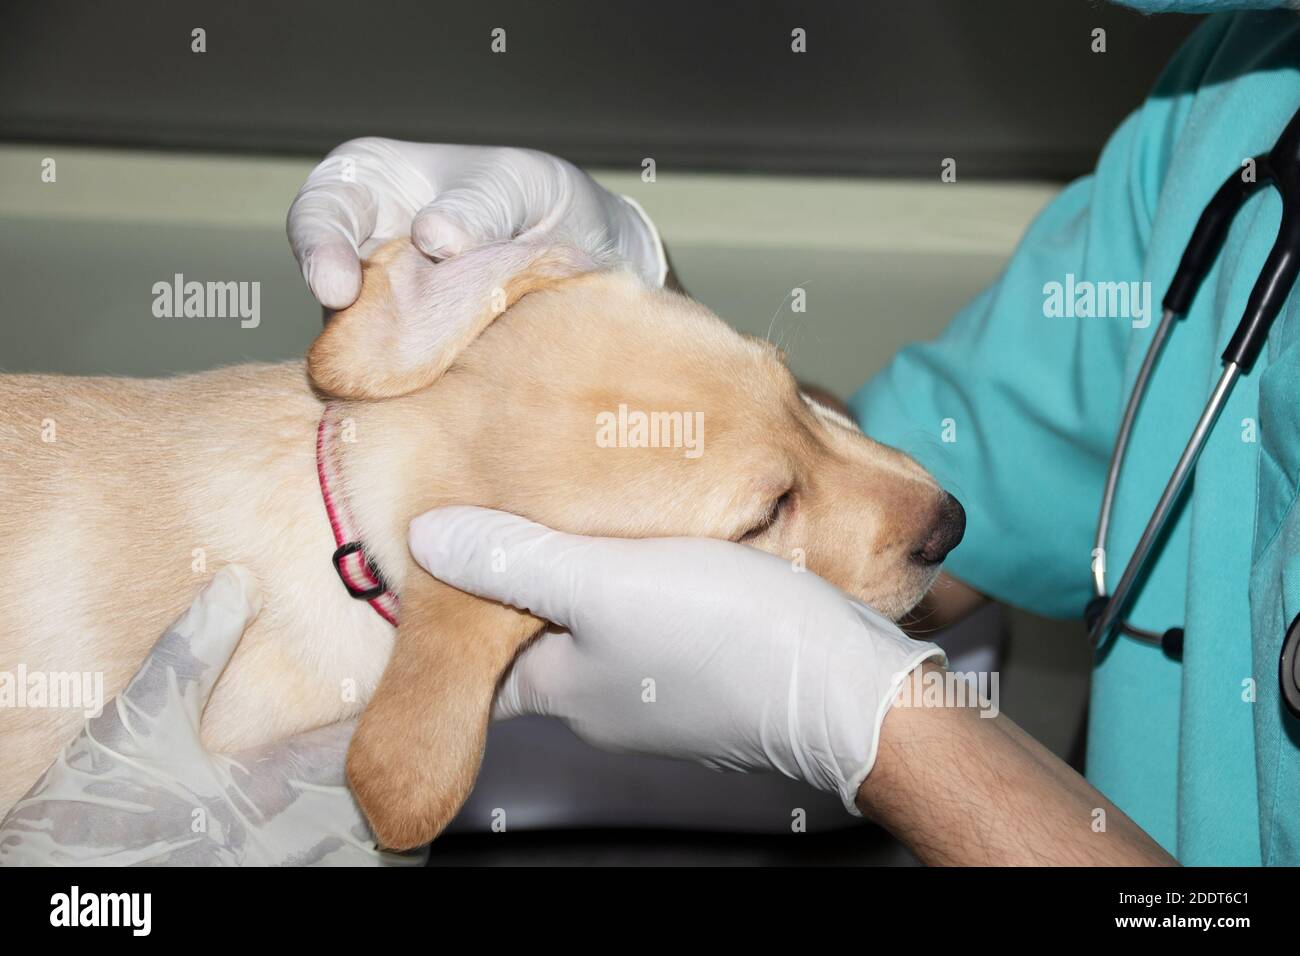 A Veterinarian examins a Labrador puppy's ears during a medical checkup Stock Photo